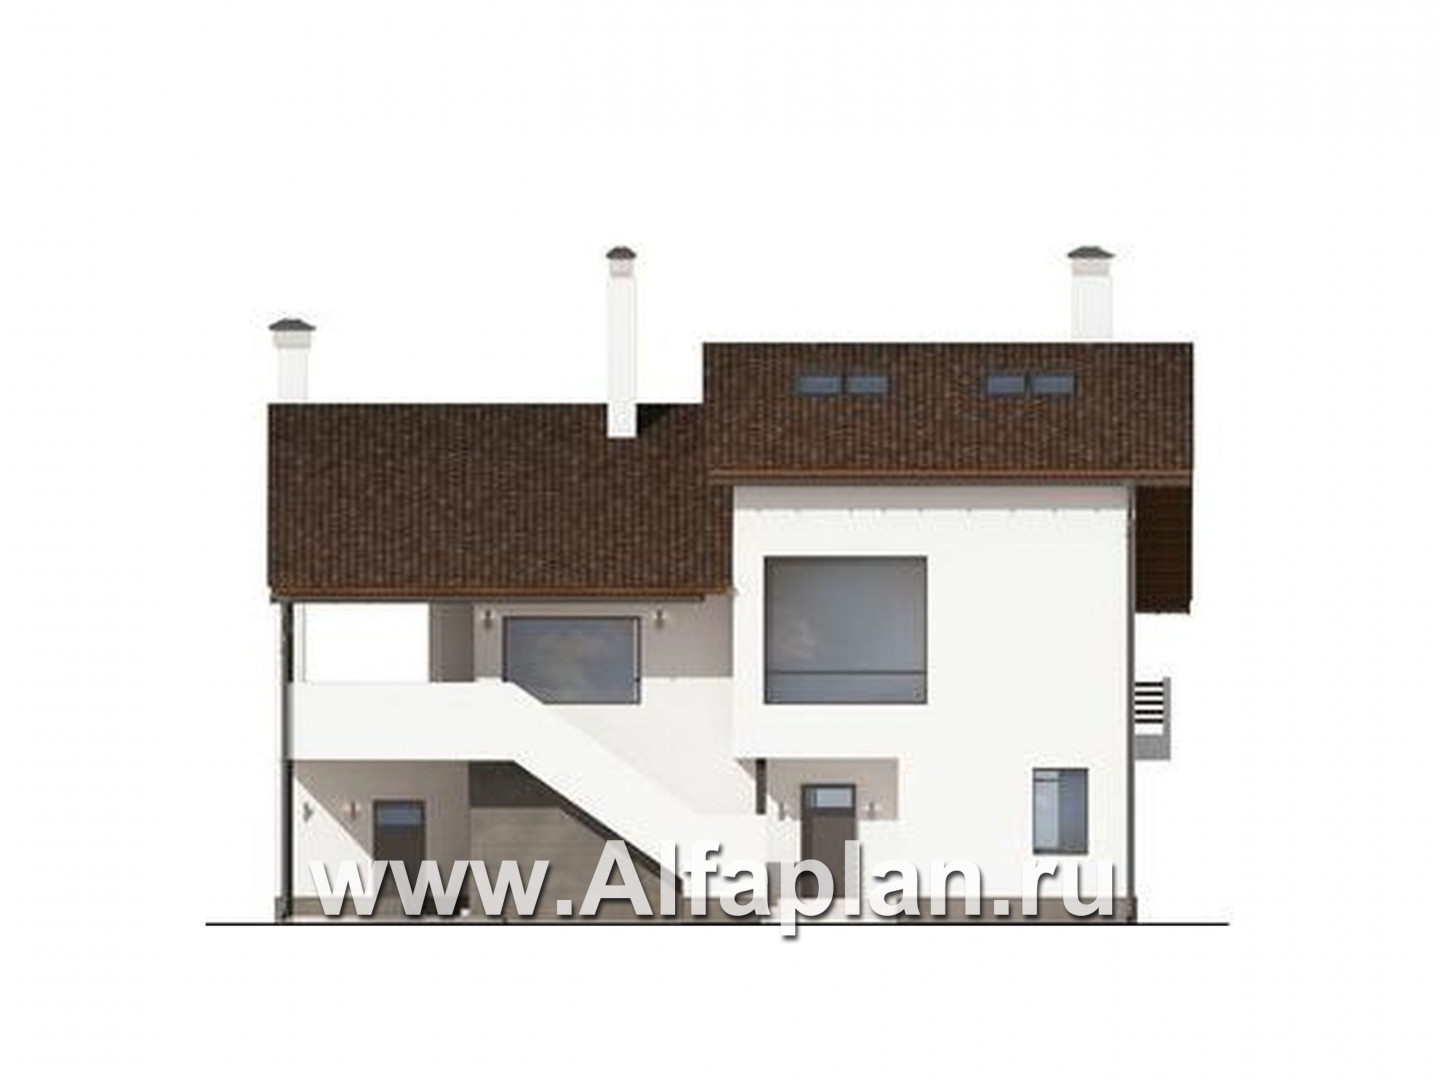 Проект двухэтажного дома, планировка с гостиной на 2 эт, с террасой и навесом на 1 авто, в современном стиле - фасад дома